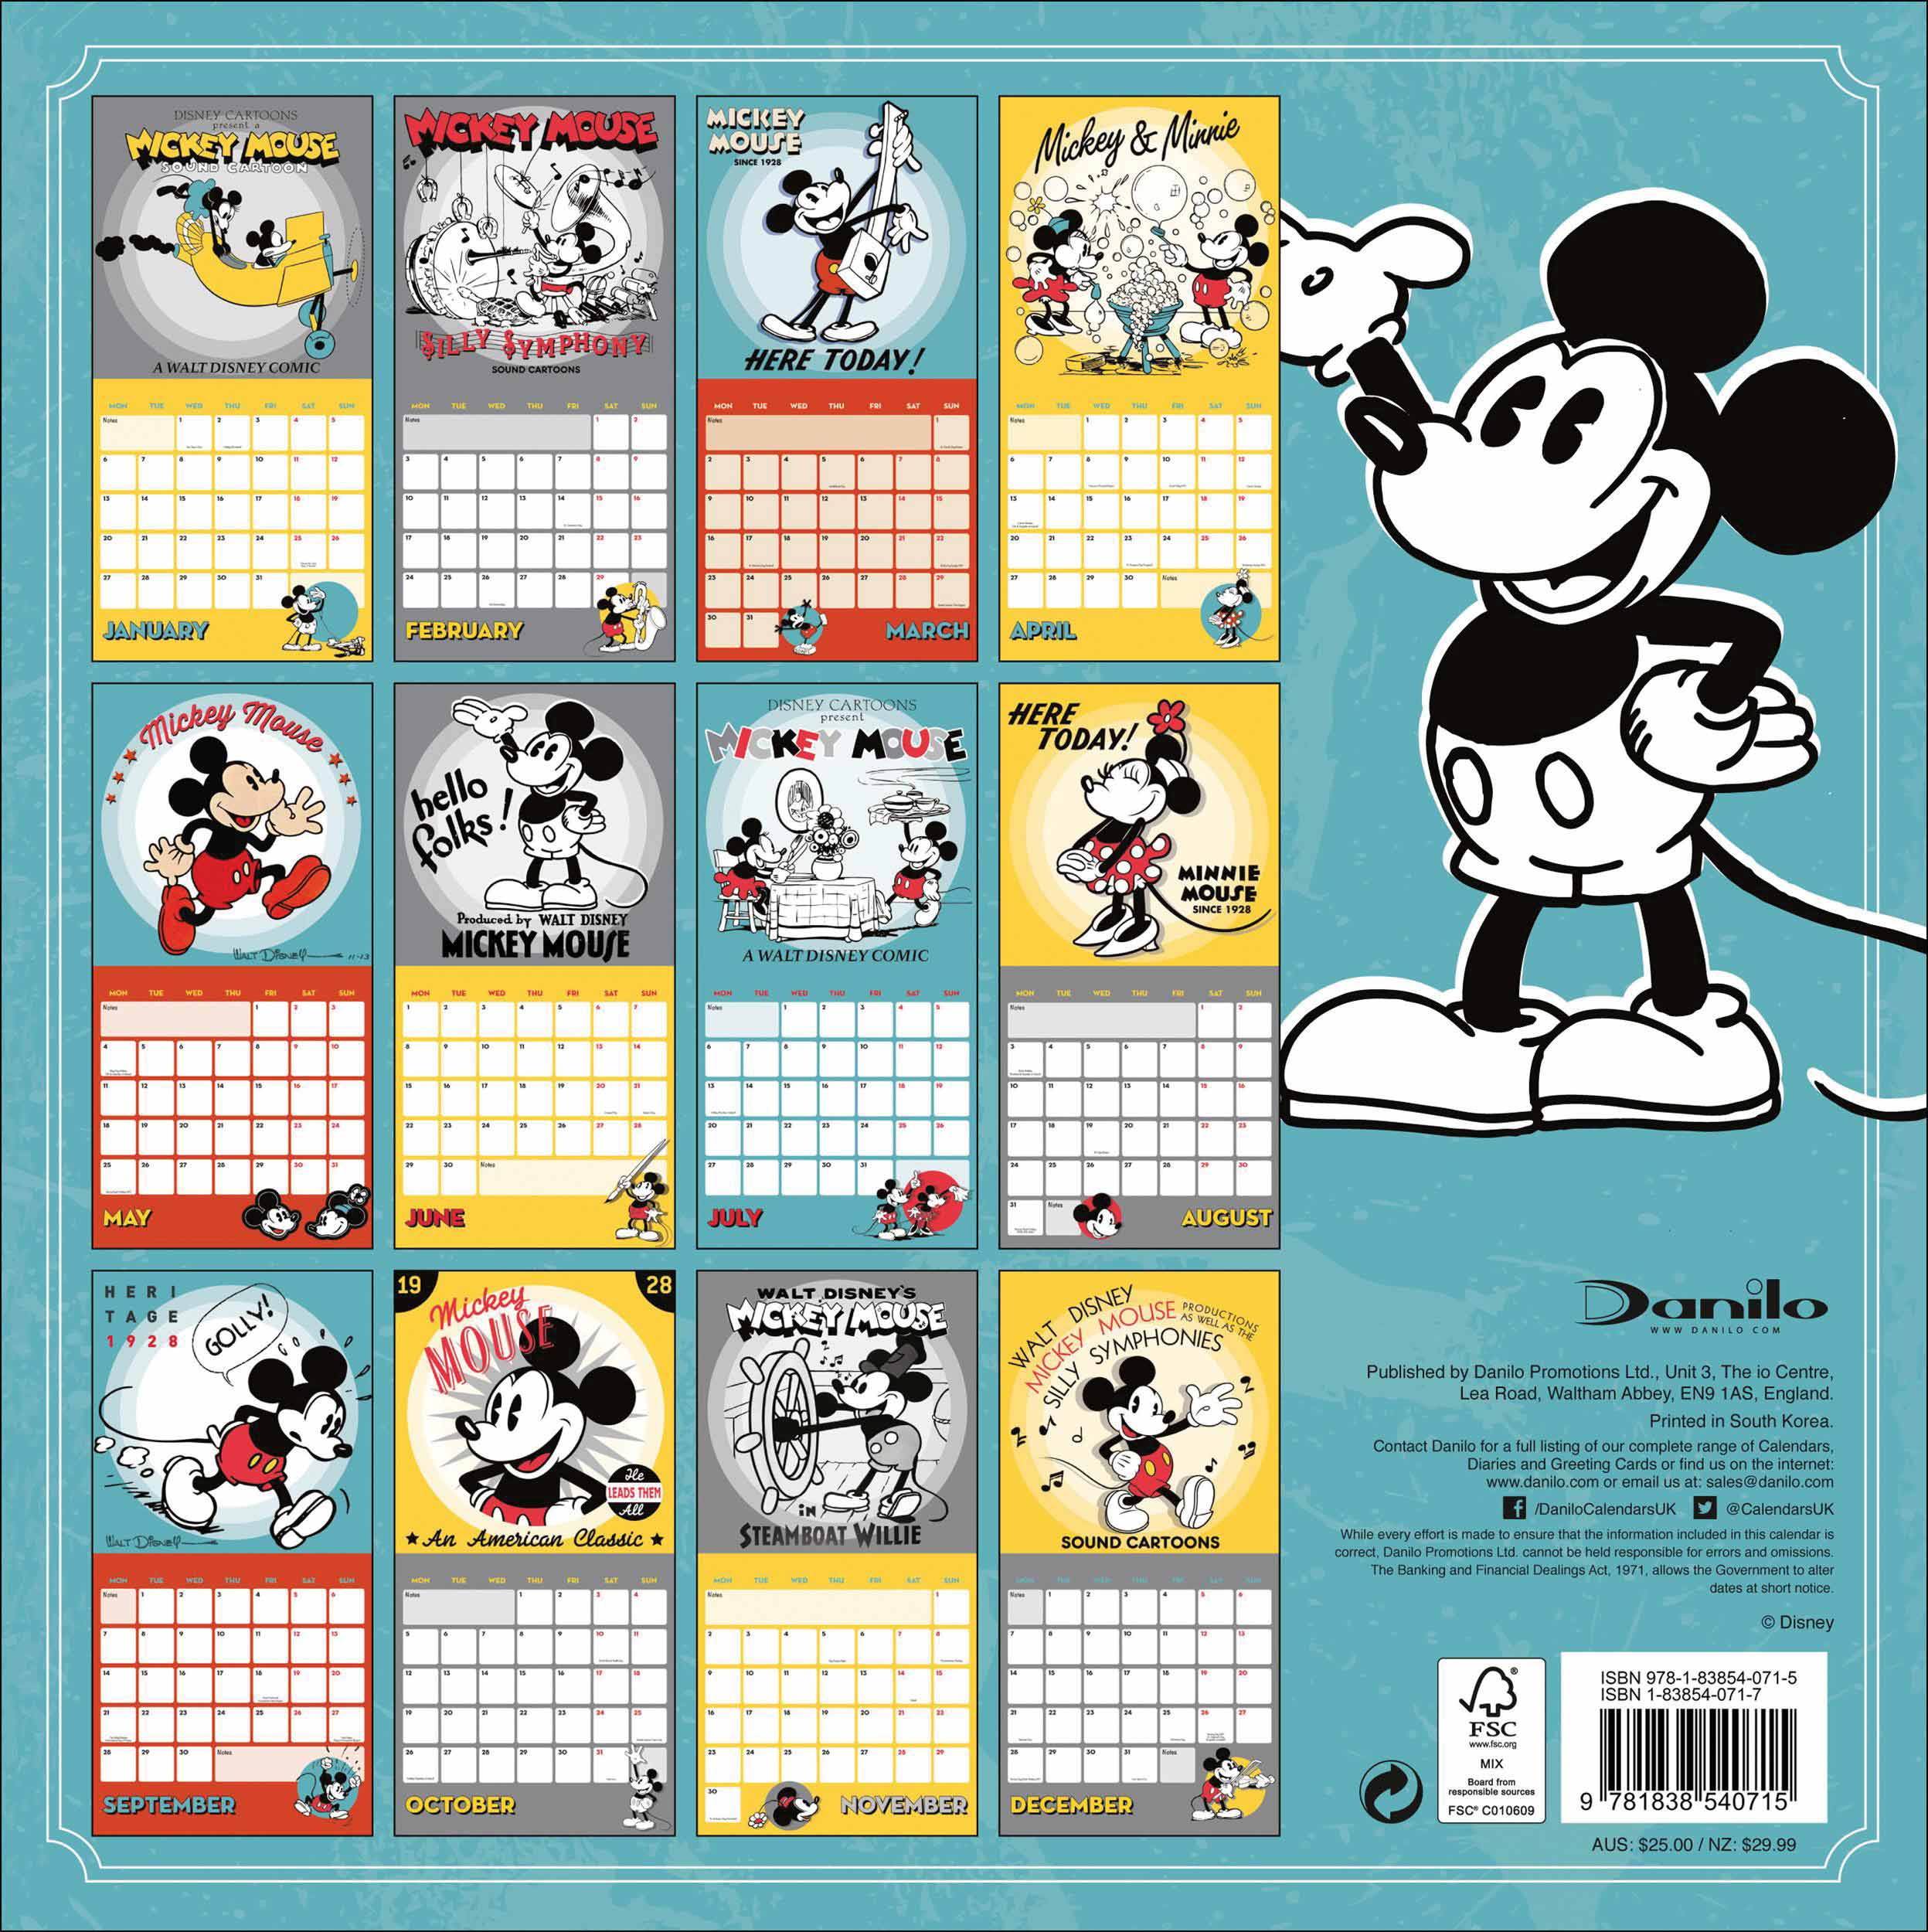 Disney, Mickey Mouse Official Calendar 2020